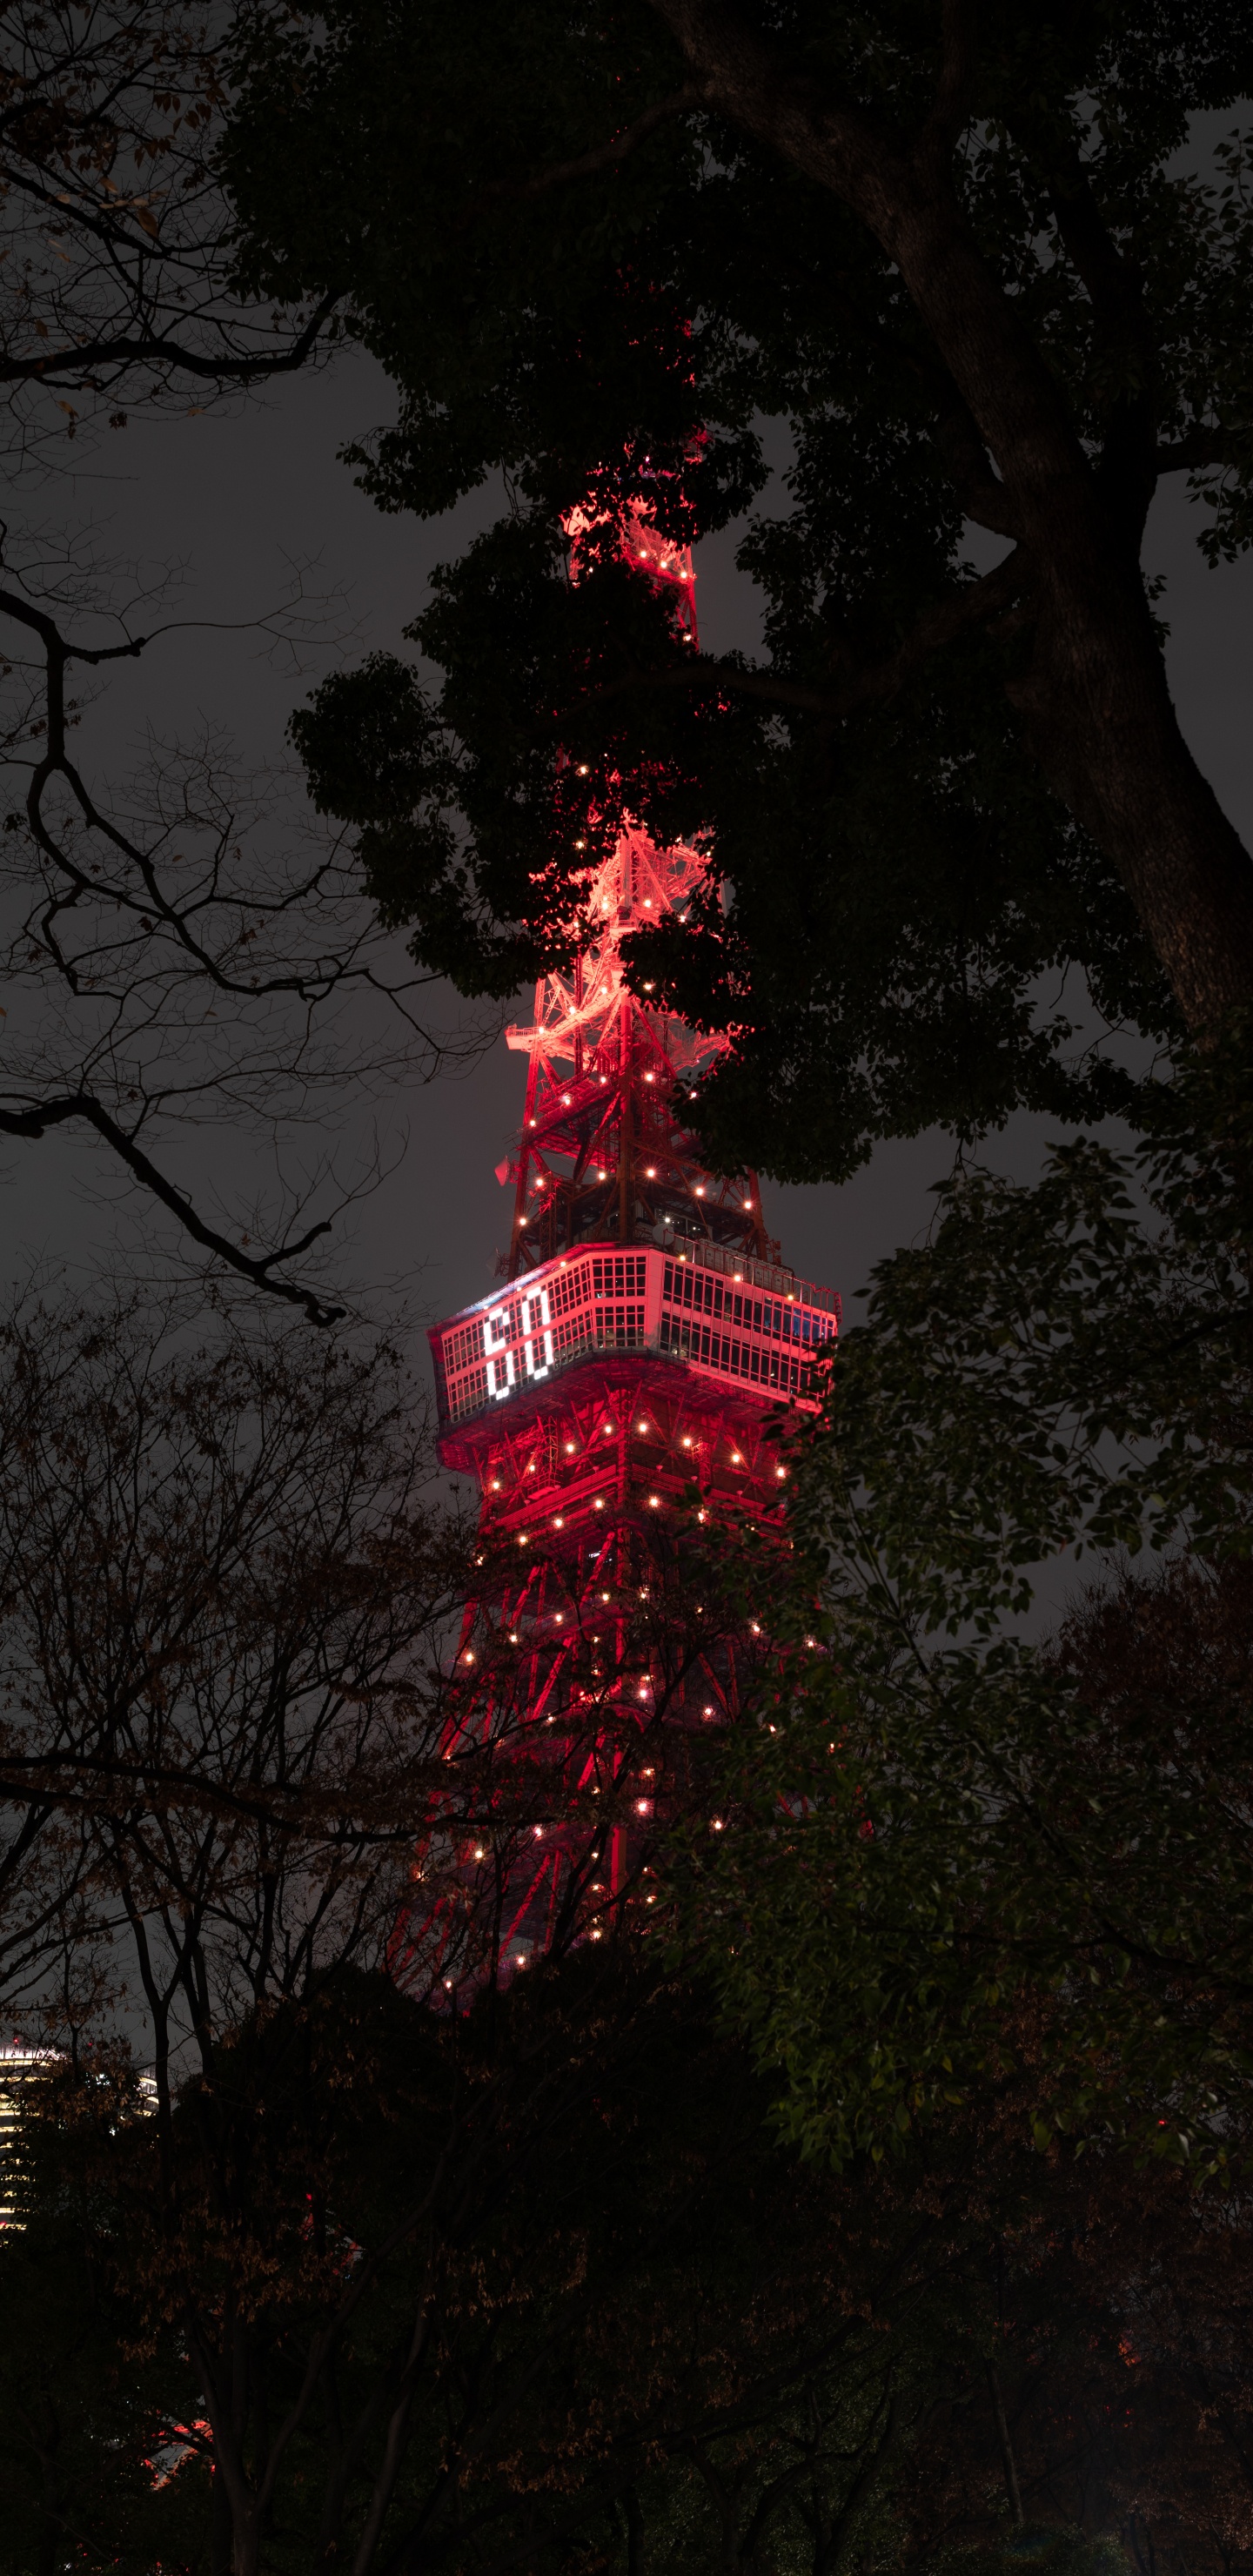 Rot-weißer Turm in Der Nähe Von Bäumen Während Der Nacht Night. Wallpaper in 1440x2960 Resolution